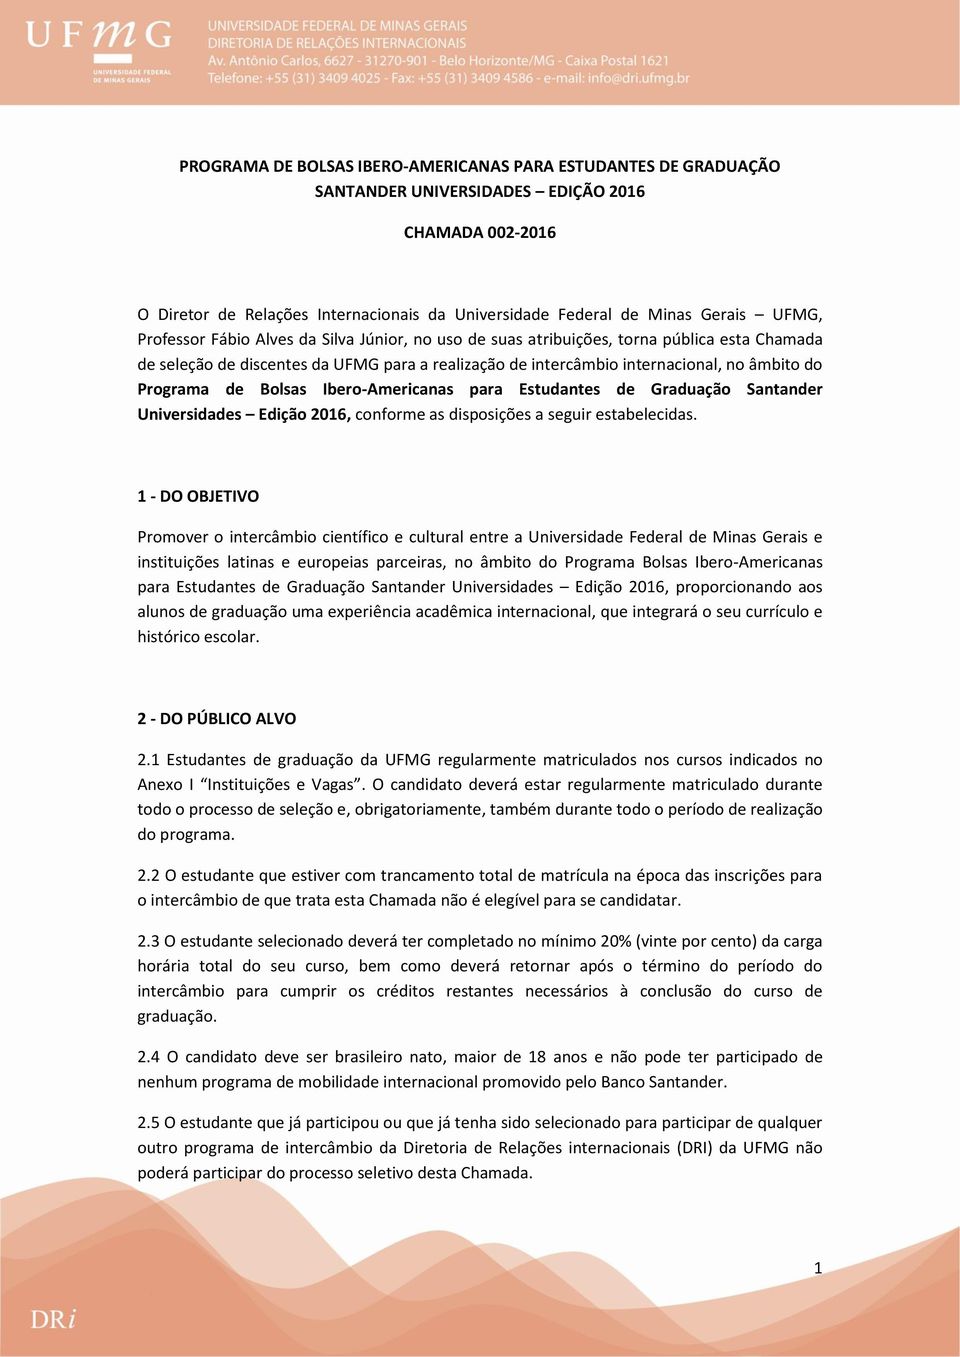 Programa de Bolsas Ibero-Americanas para Estudantes de Graduação Santander Universidades Edição 2016, conforme as disposições a seguir estabelecidas.